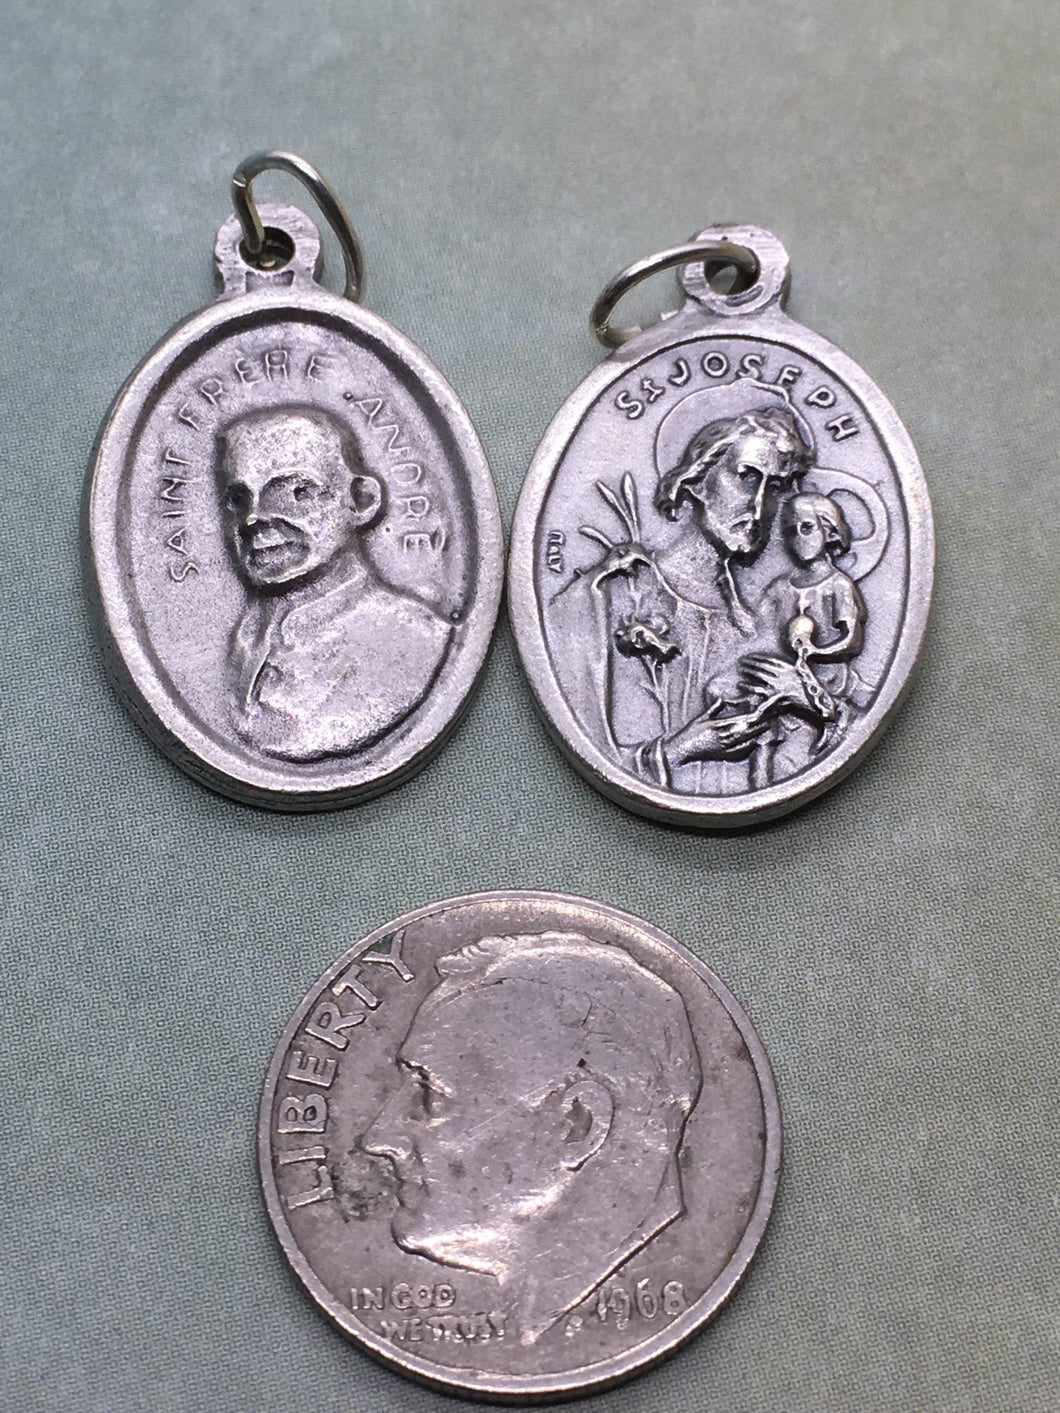 St. Frere Andre (Bessette) (1845 - 1937)/St. Joseph holy medal